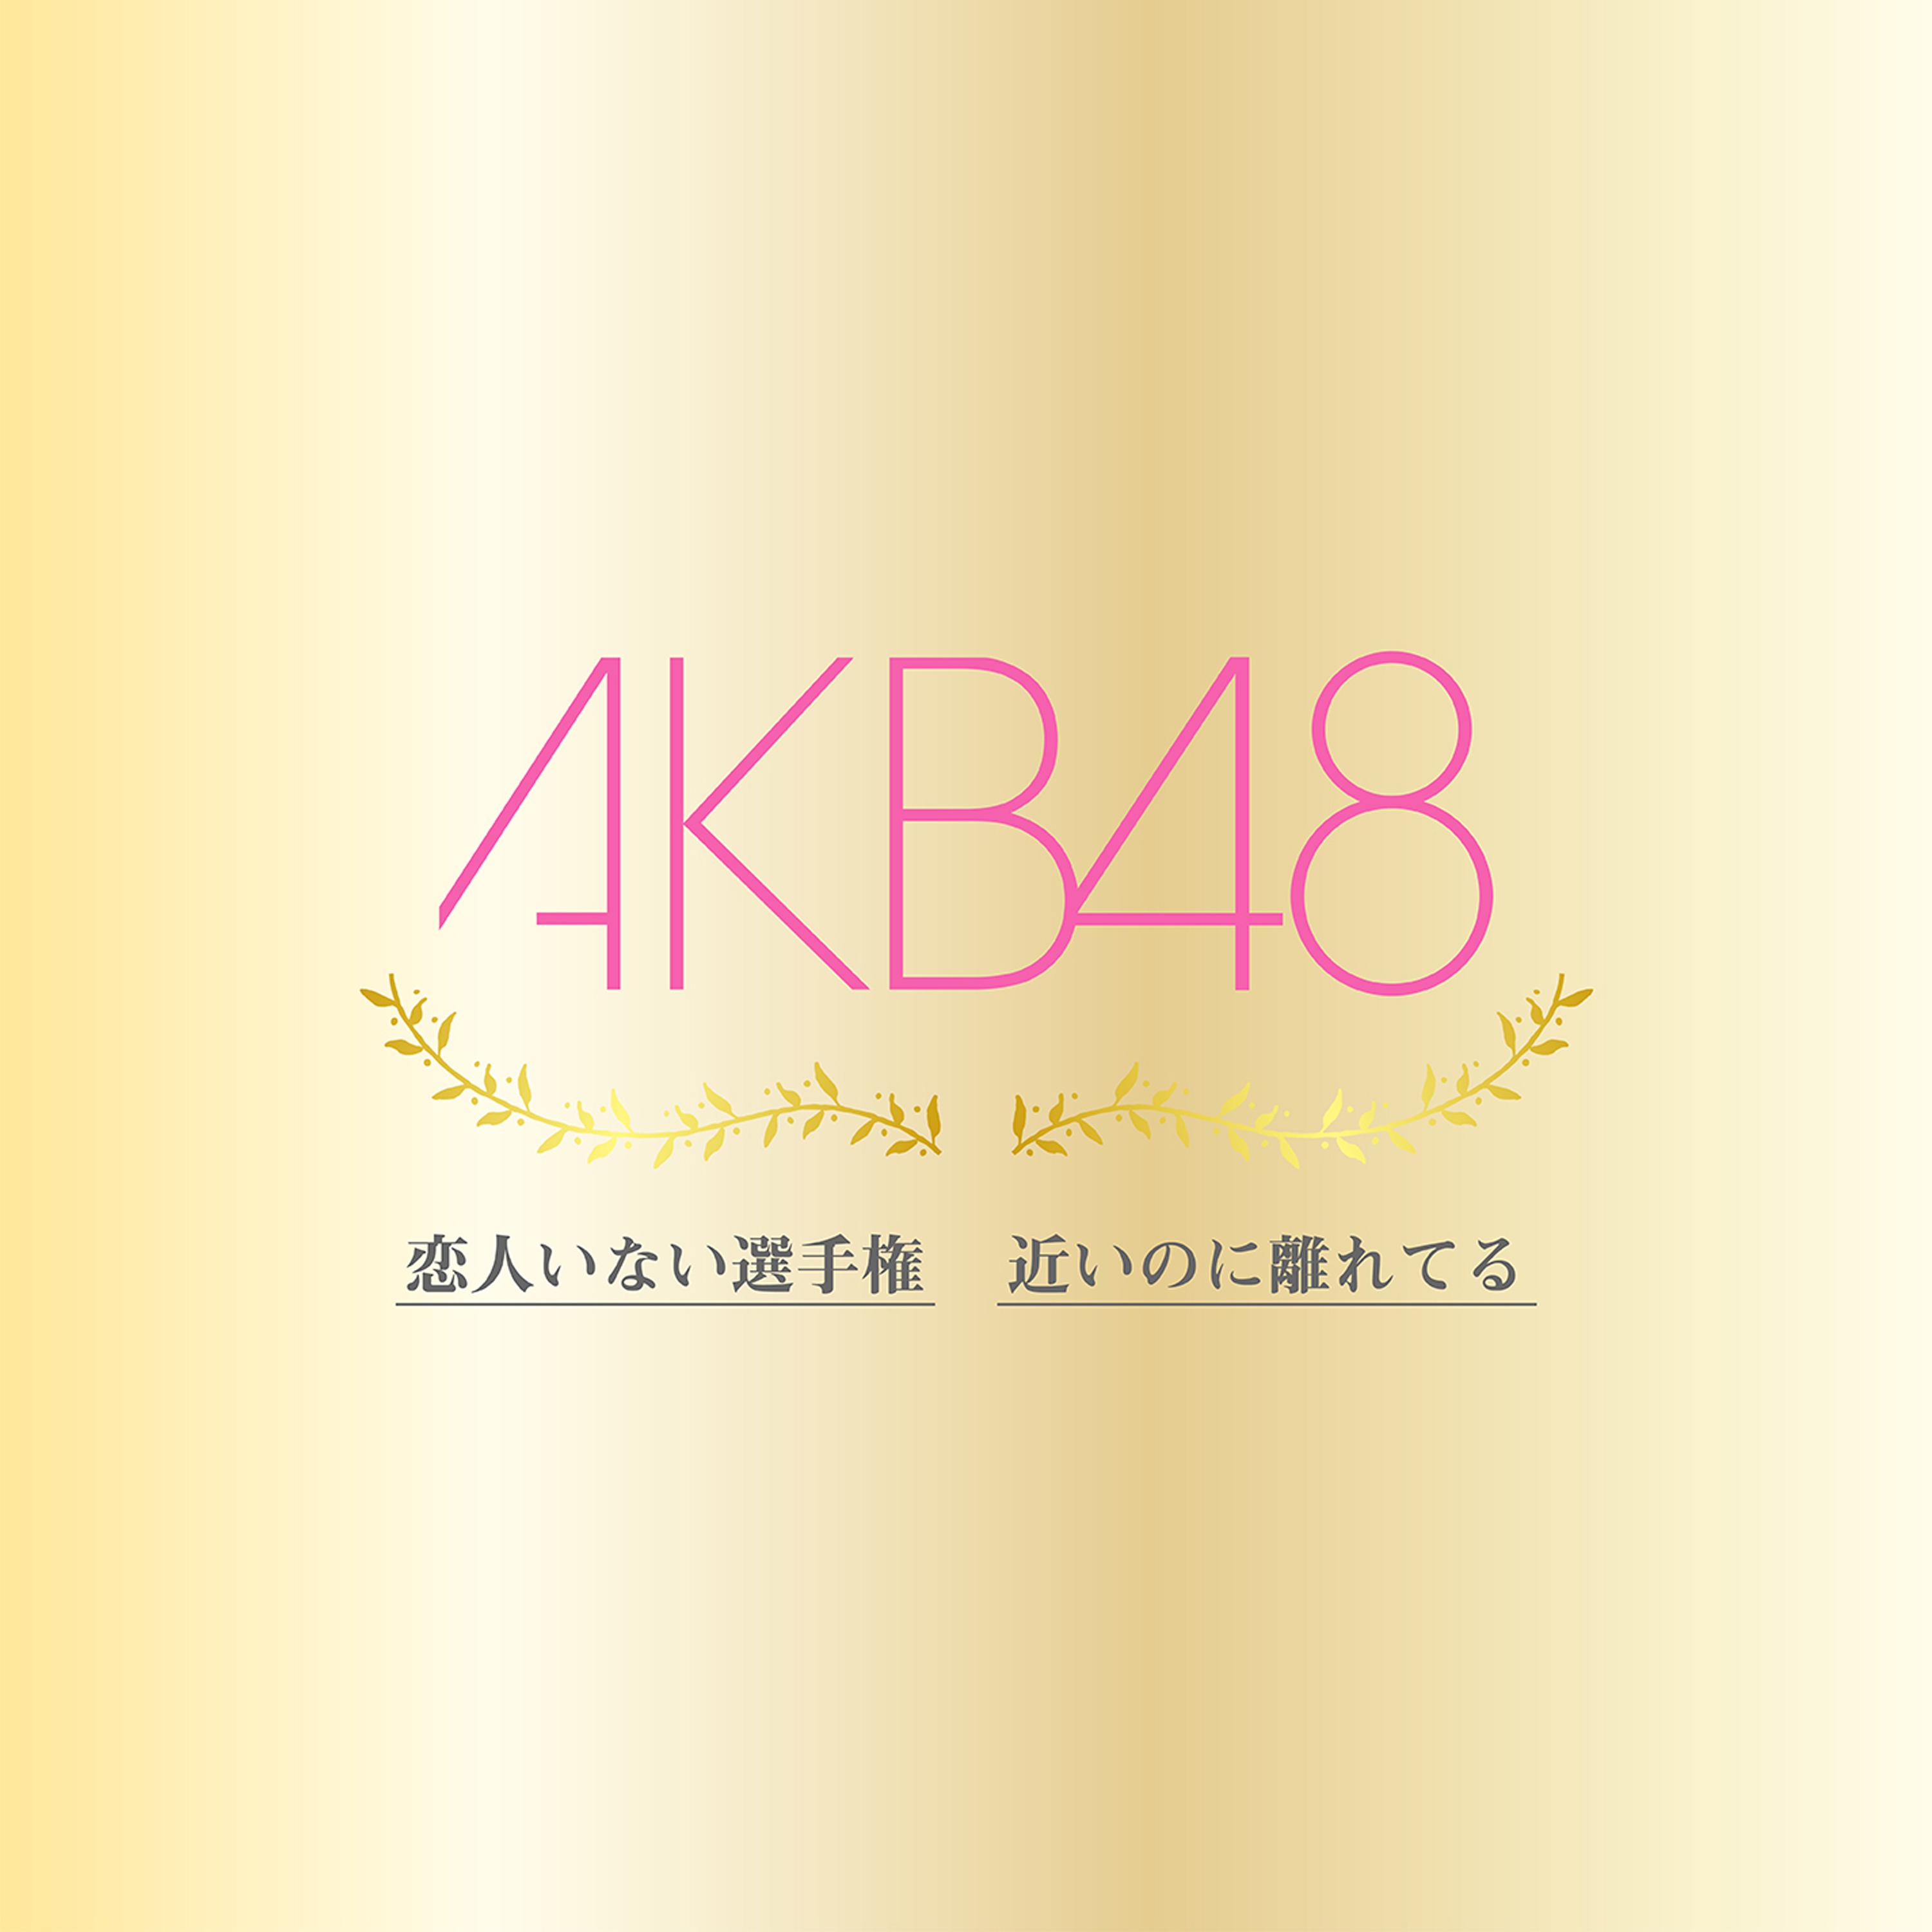 恋人いない選手権歌词 歌手AKB48-专辑恋人いない選手権 / 近いのに離れてる-单曲《恋人いない選手権》LRC歌词下载